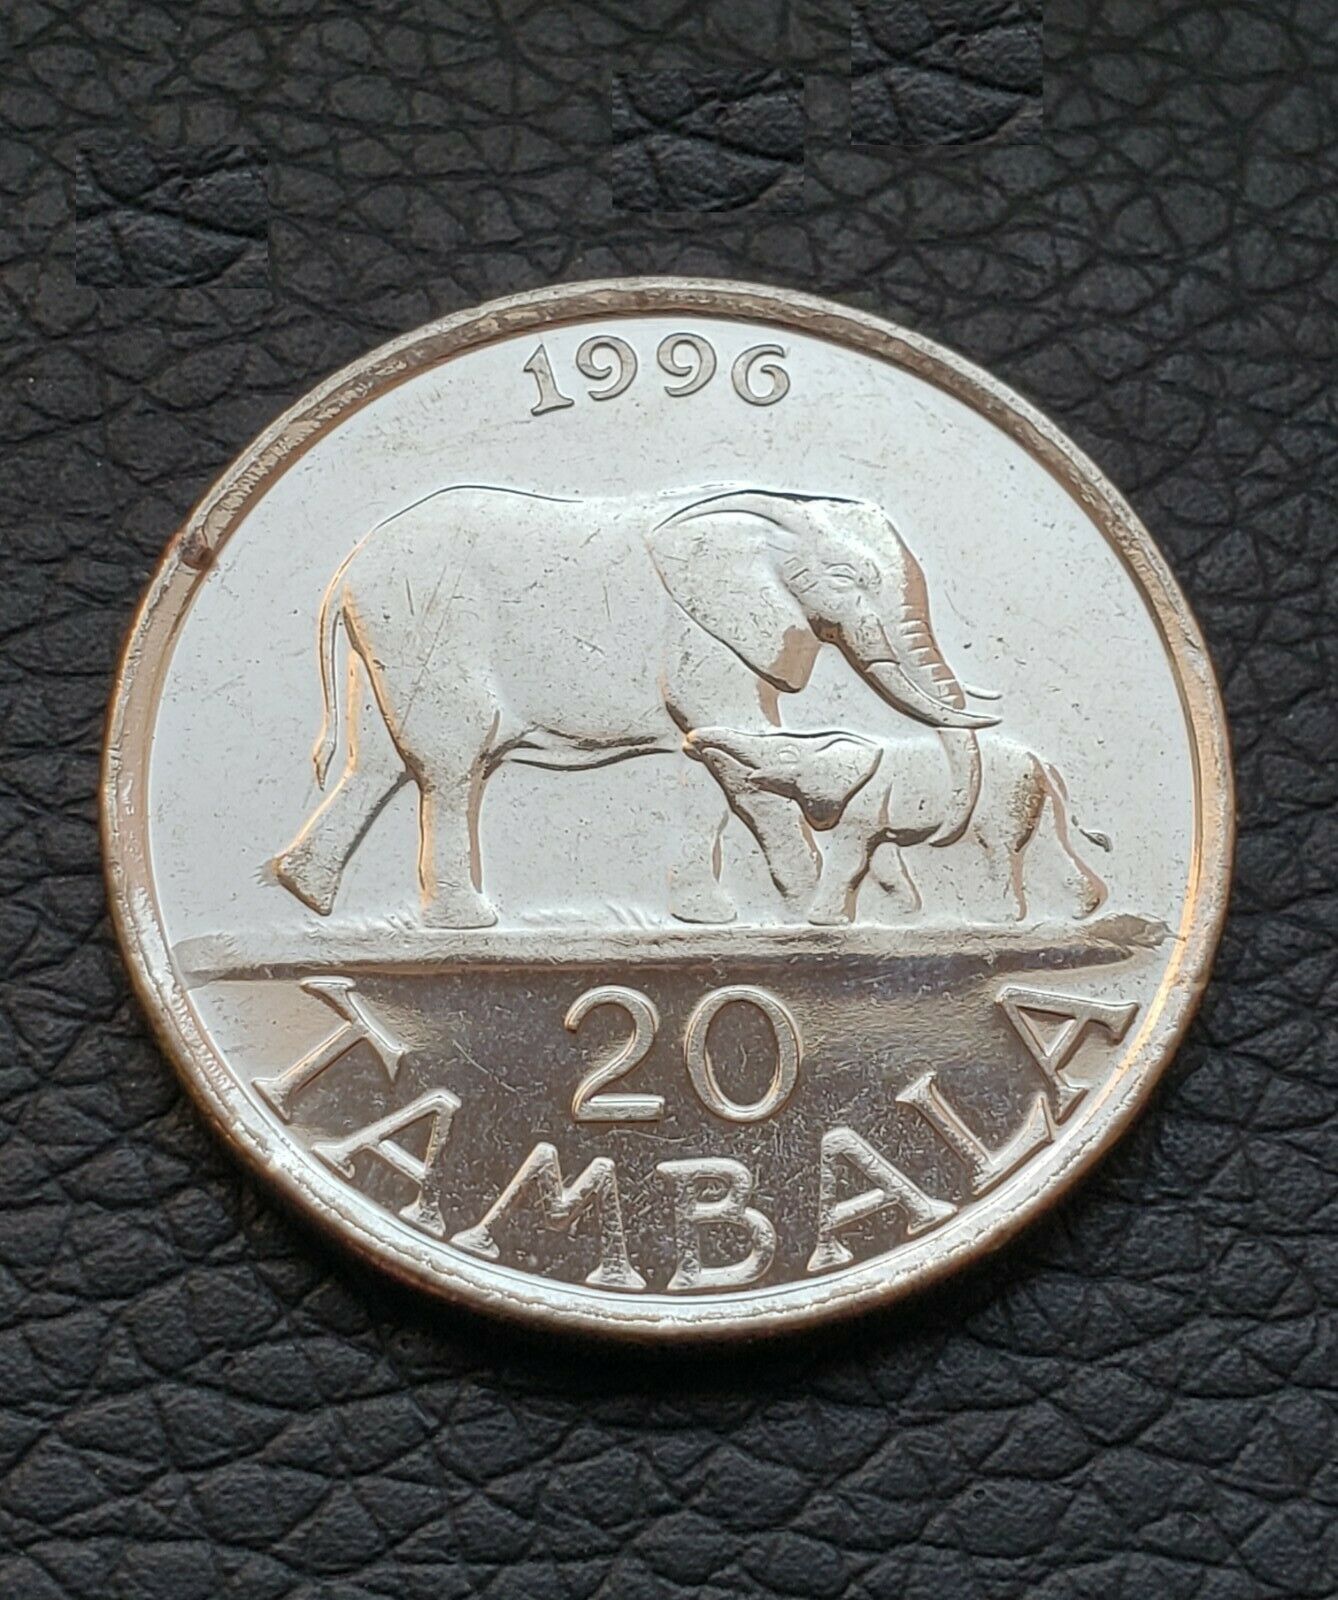 1996 Malawi 20 Tambala Coin